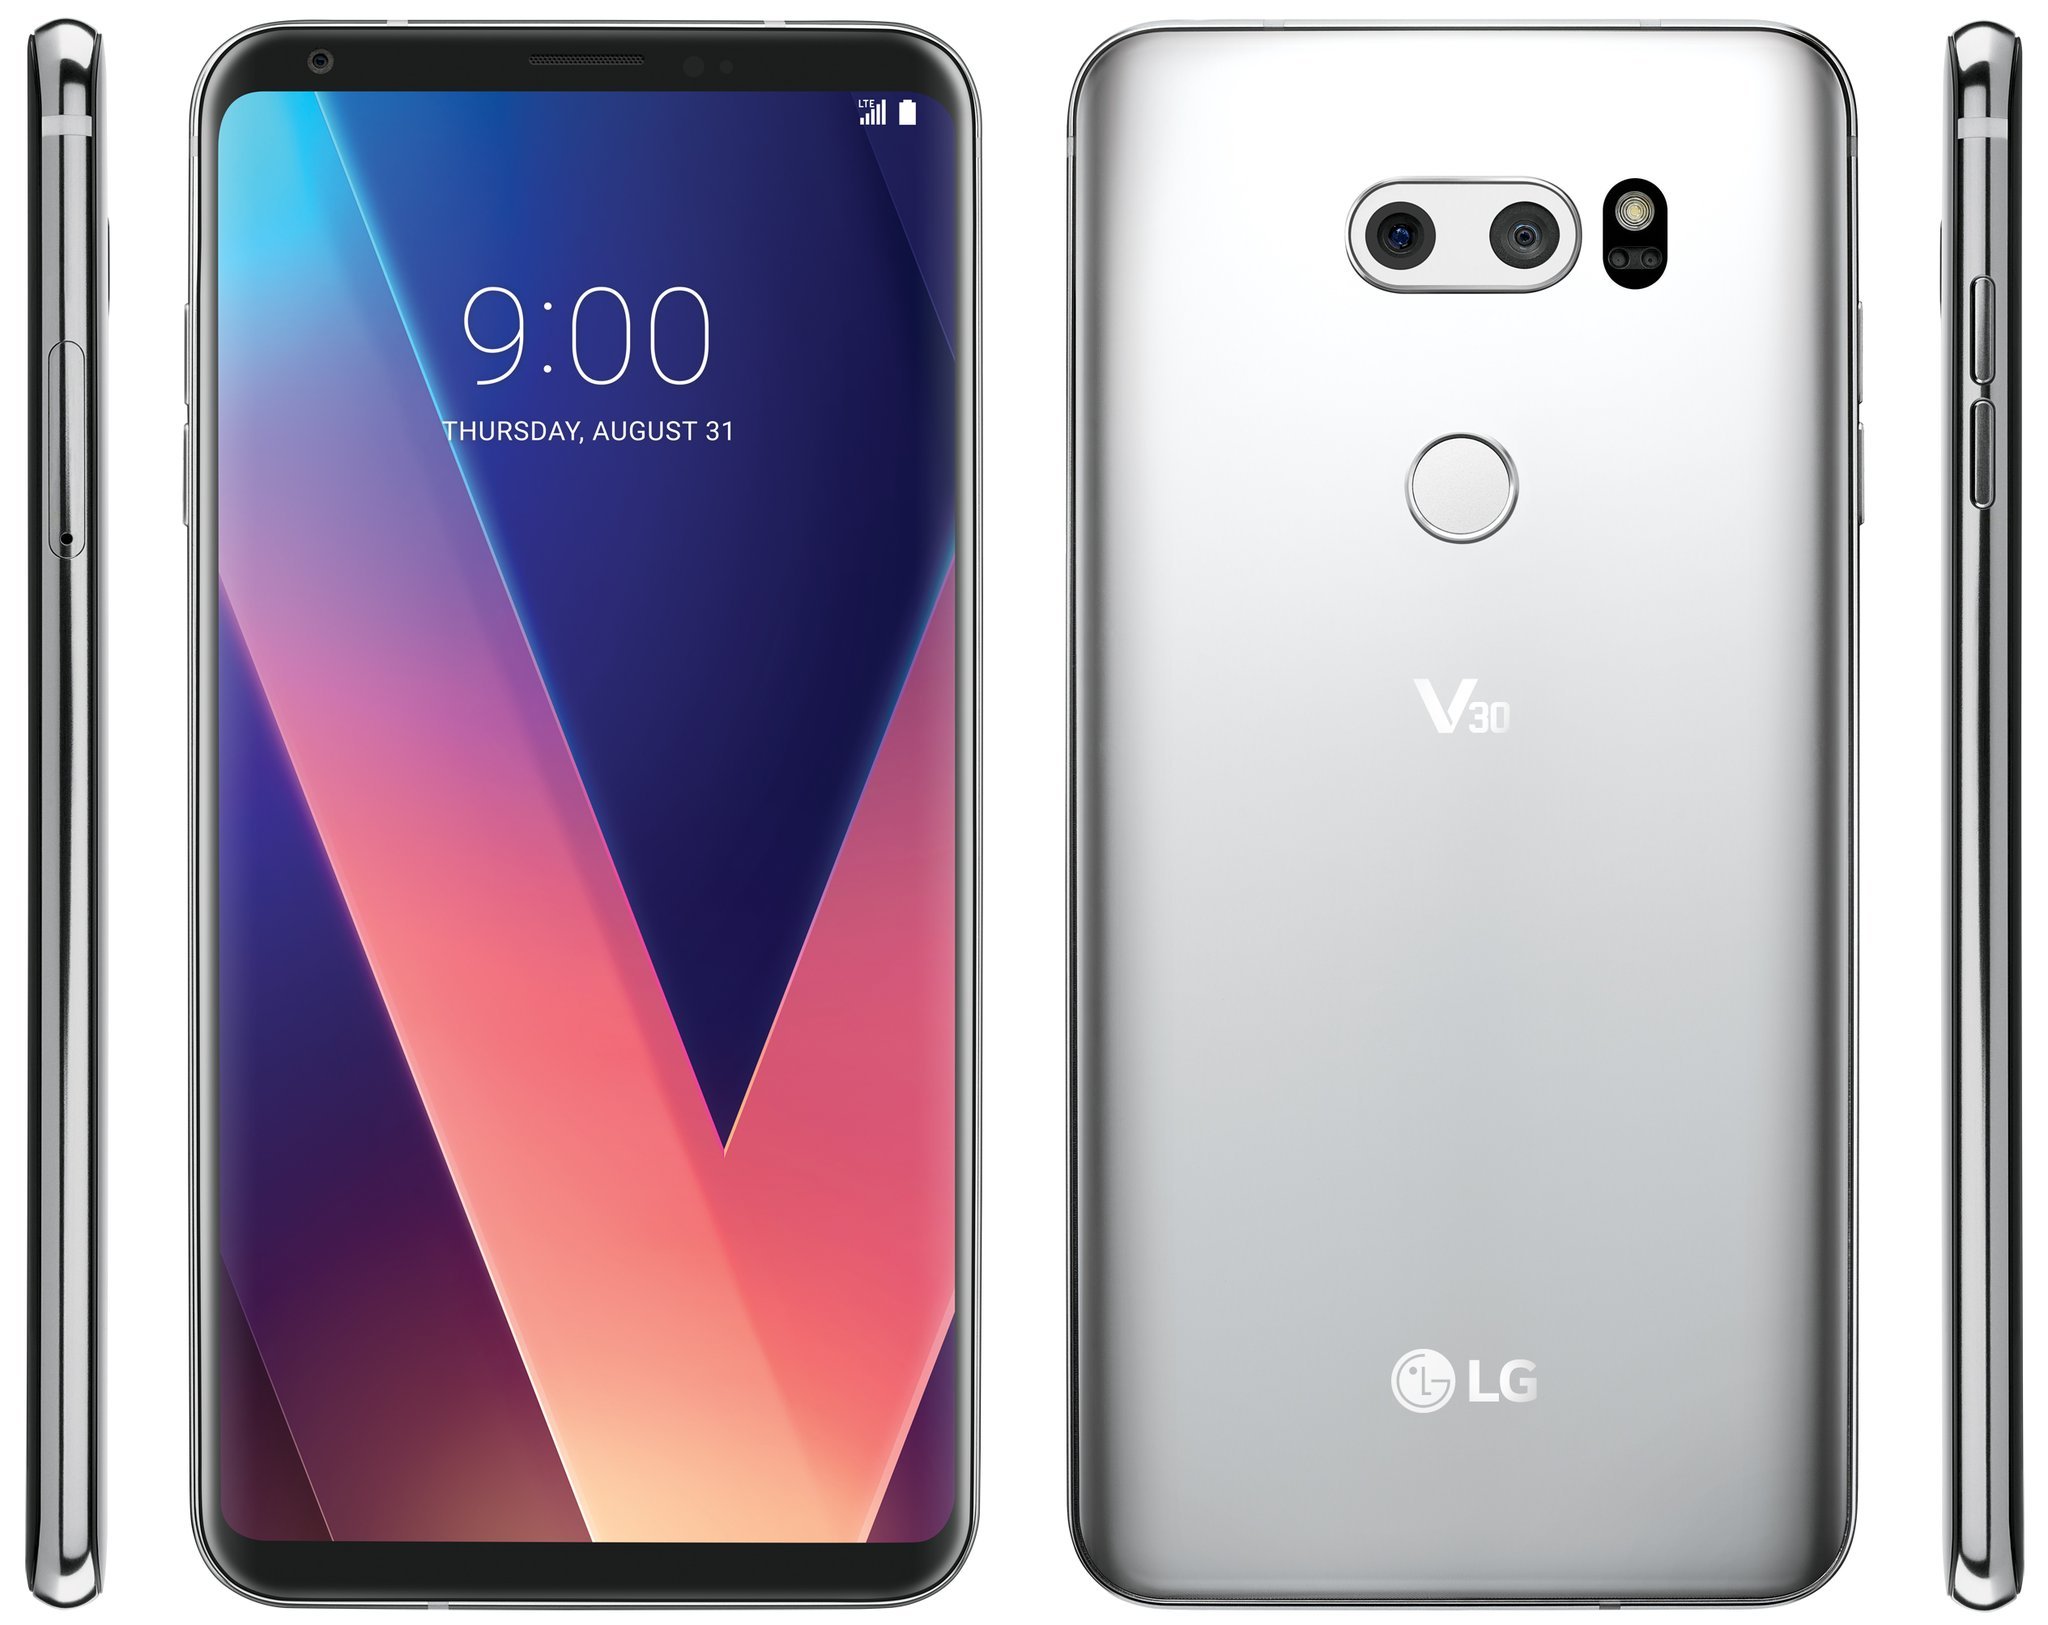 LG V30, Yeni Sızıntıda Her Açıdan Göründü!